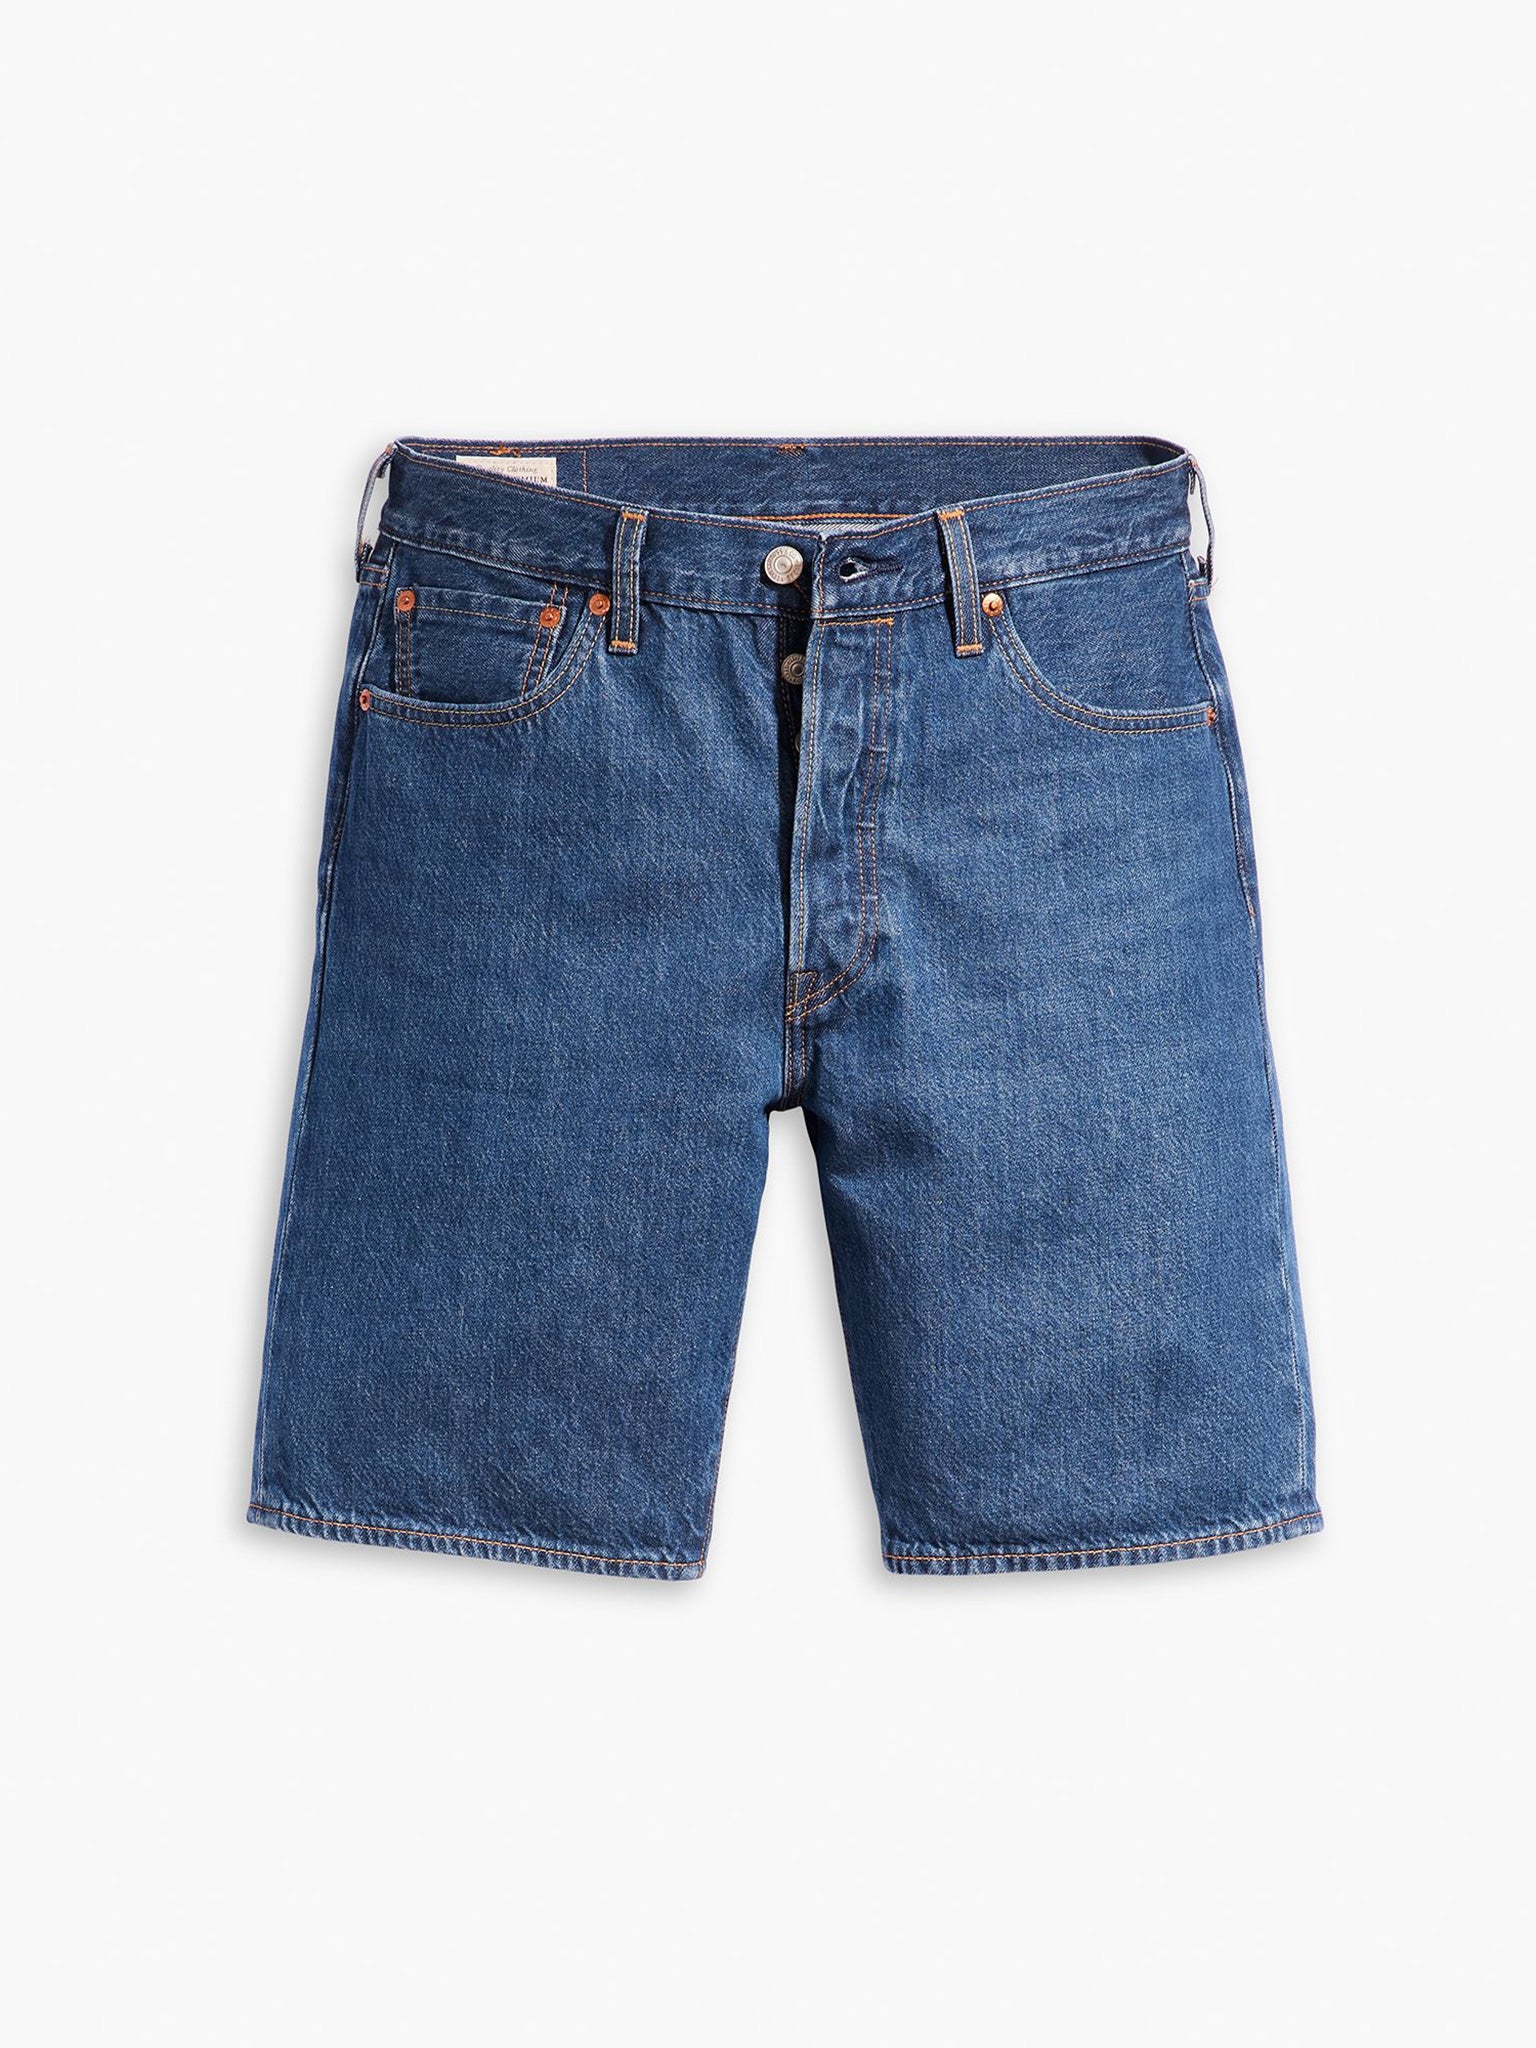 Ανδρική βερμούδα τζιν 501® original shorts dark indigo - worn in 365120228 | 365120228